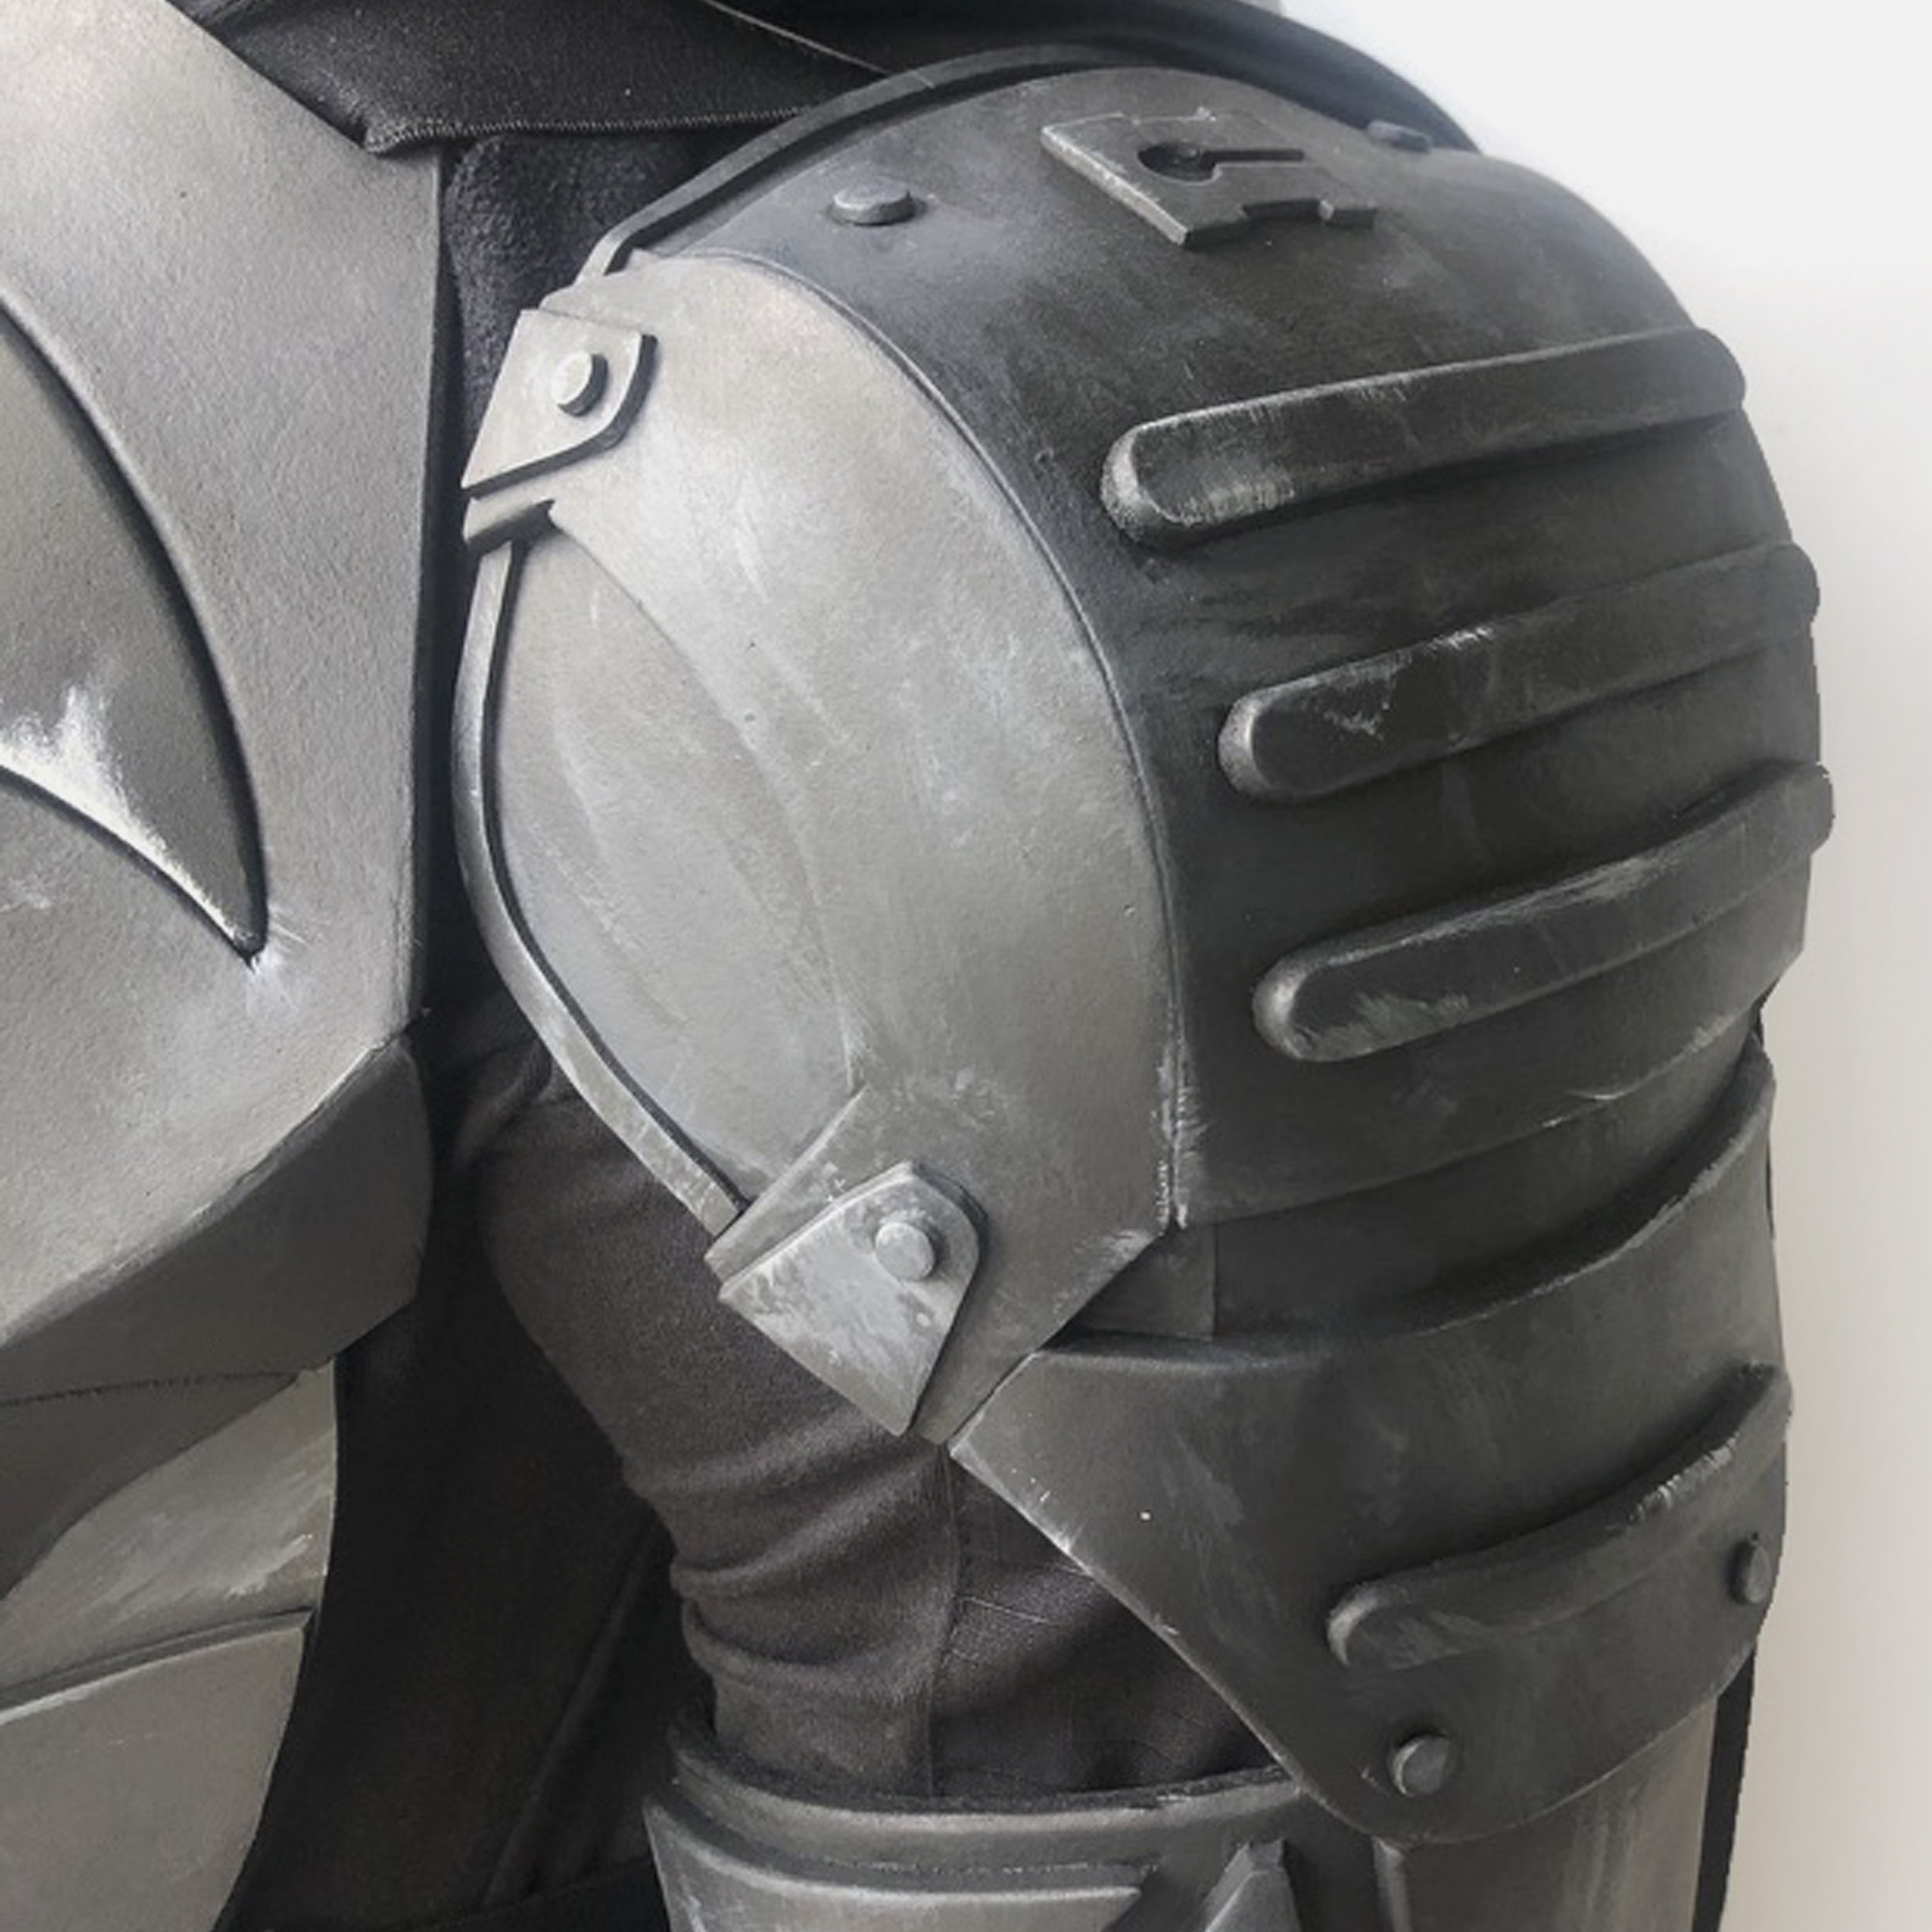 leather shoulder armor patterns